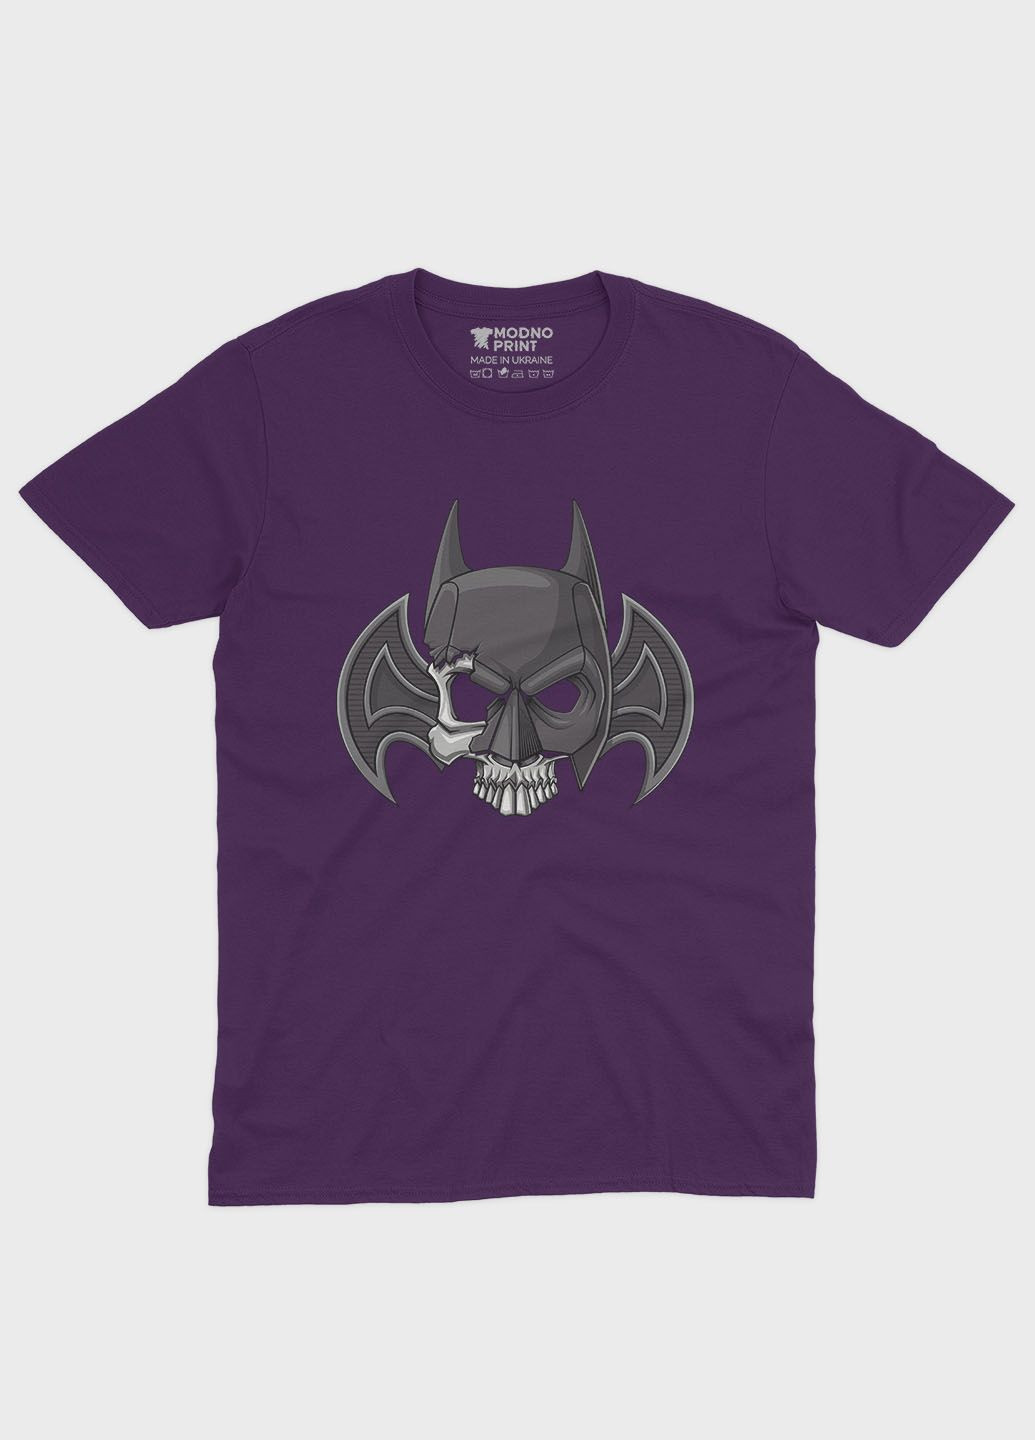 Фіолетова демісезонна футболка для хлопчика з принтом супергероя - бетмен (ts001-1-dby-006-003-005-b) Modno